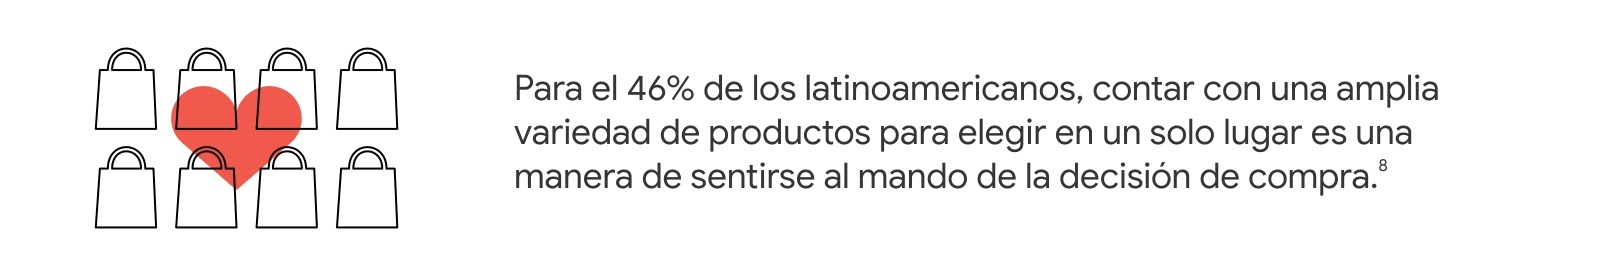 Bolsas de comprar y un corazón en rojo. A la derecha, dice: Para el 46% de los latinoamericanos, contar con una amplia variedad de productos para elegir en un solo lugar es una manera de sentirse al mando de la decisión de compra.